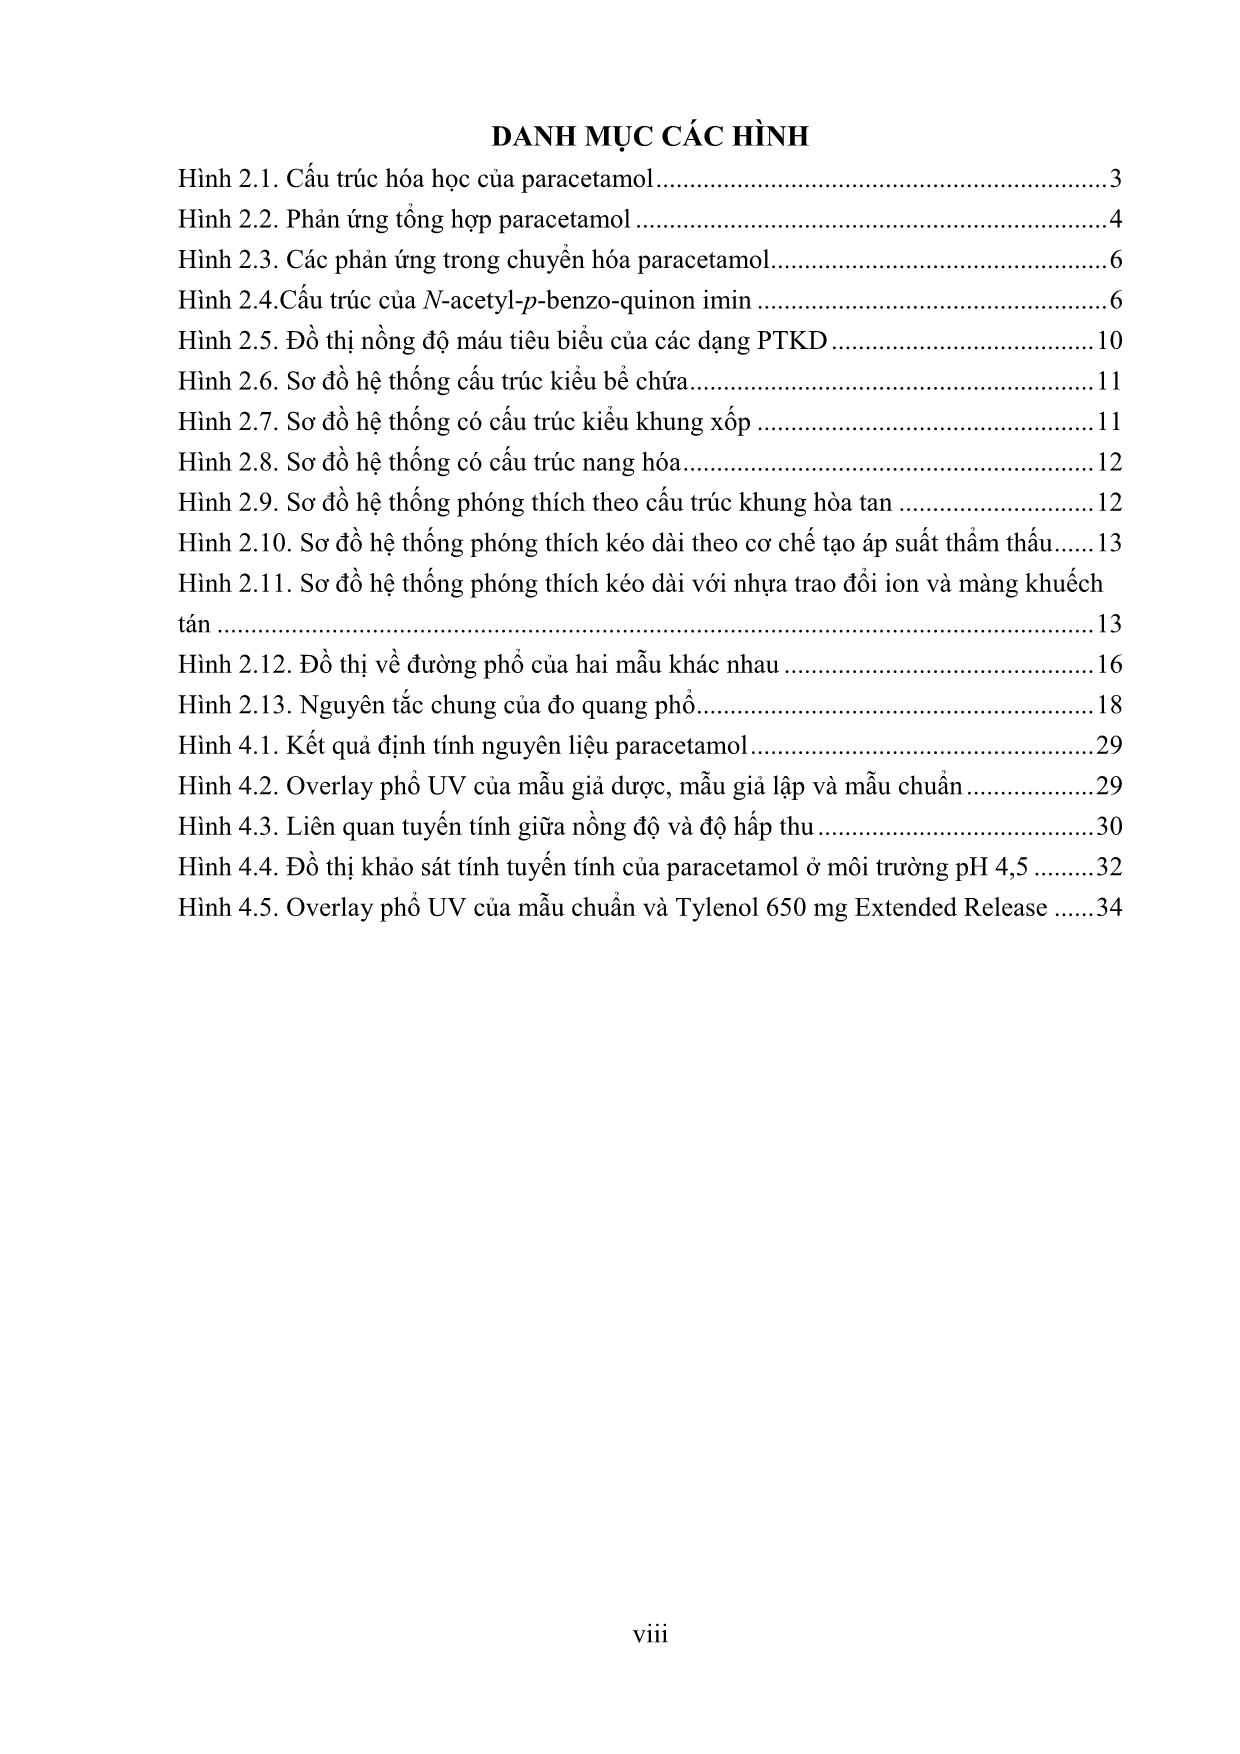 Thẩm định quy trình định lượng paracetamol 650mg phóng thích kéo dài bằng phương pháp quang phổ UV - Vis trang 9